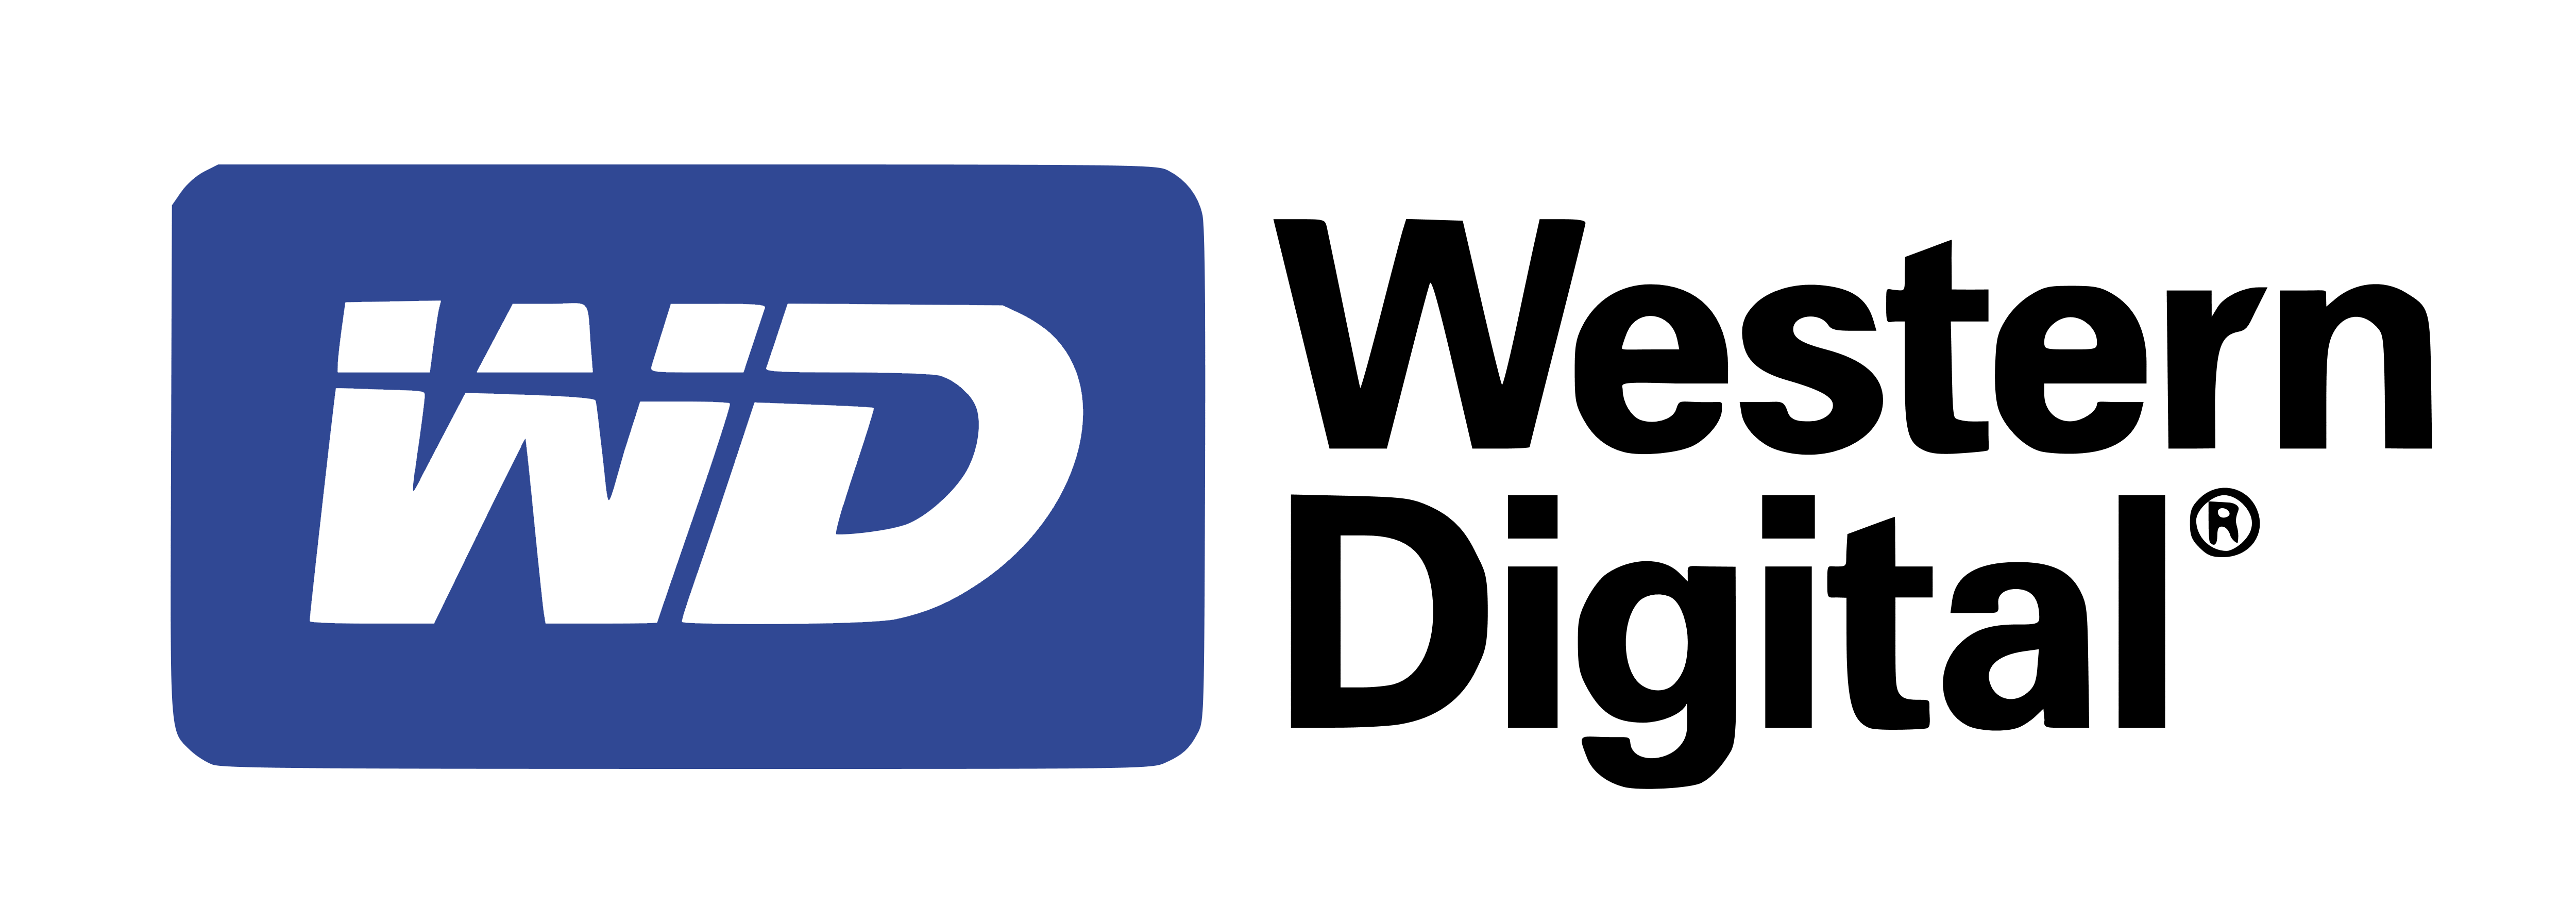 Western Digital Logo - Western Digital